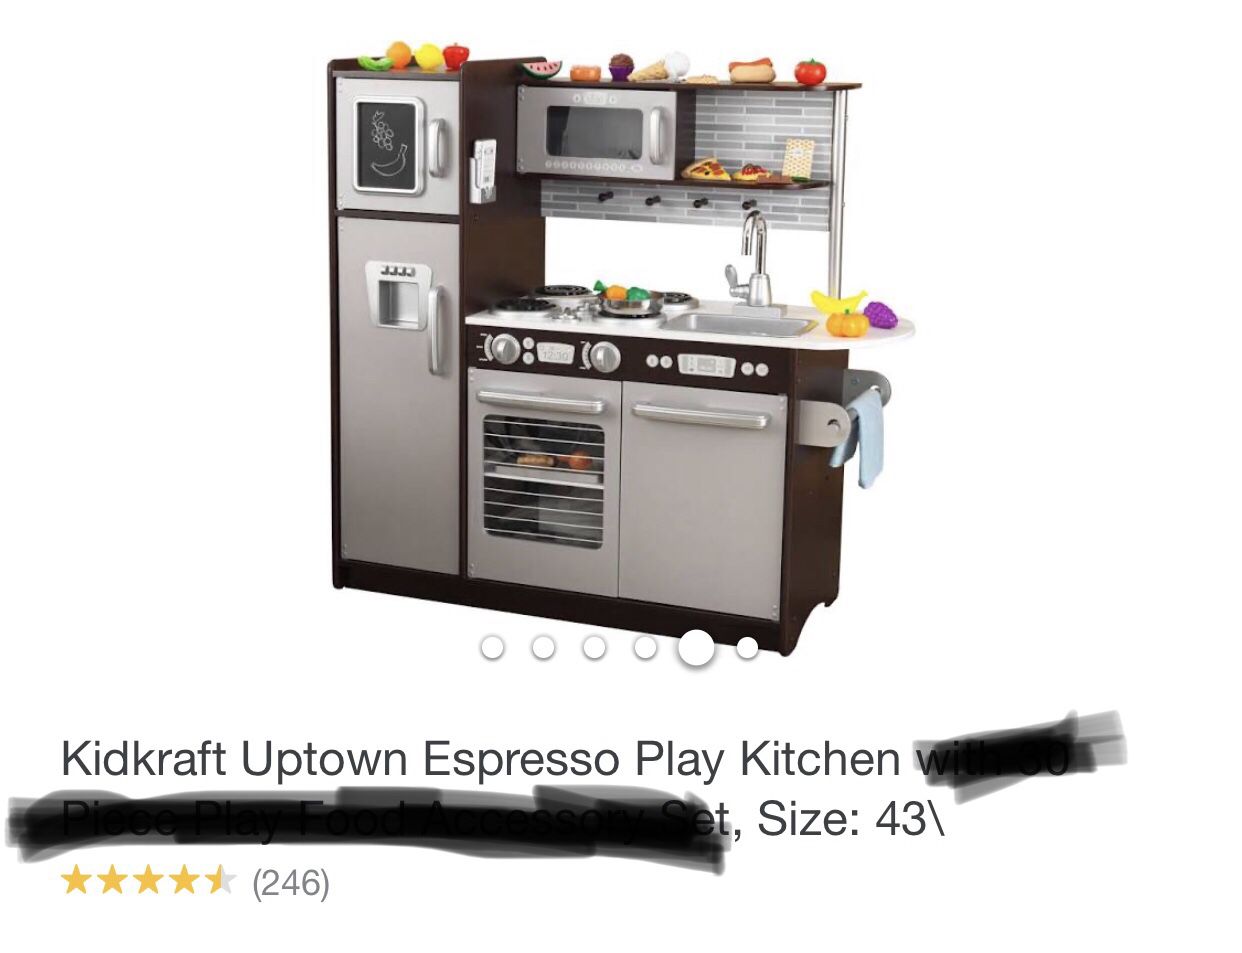 Kidkraft Uptown Espresso Play Kitchen